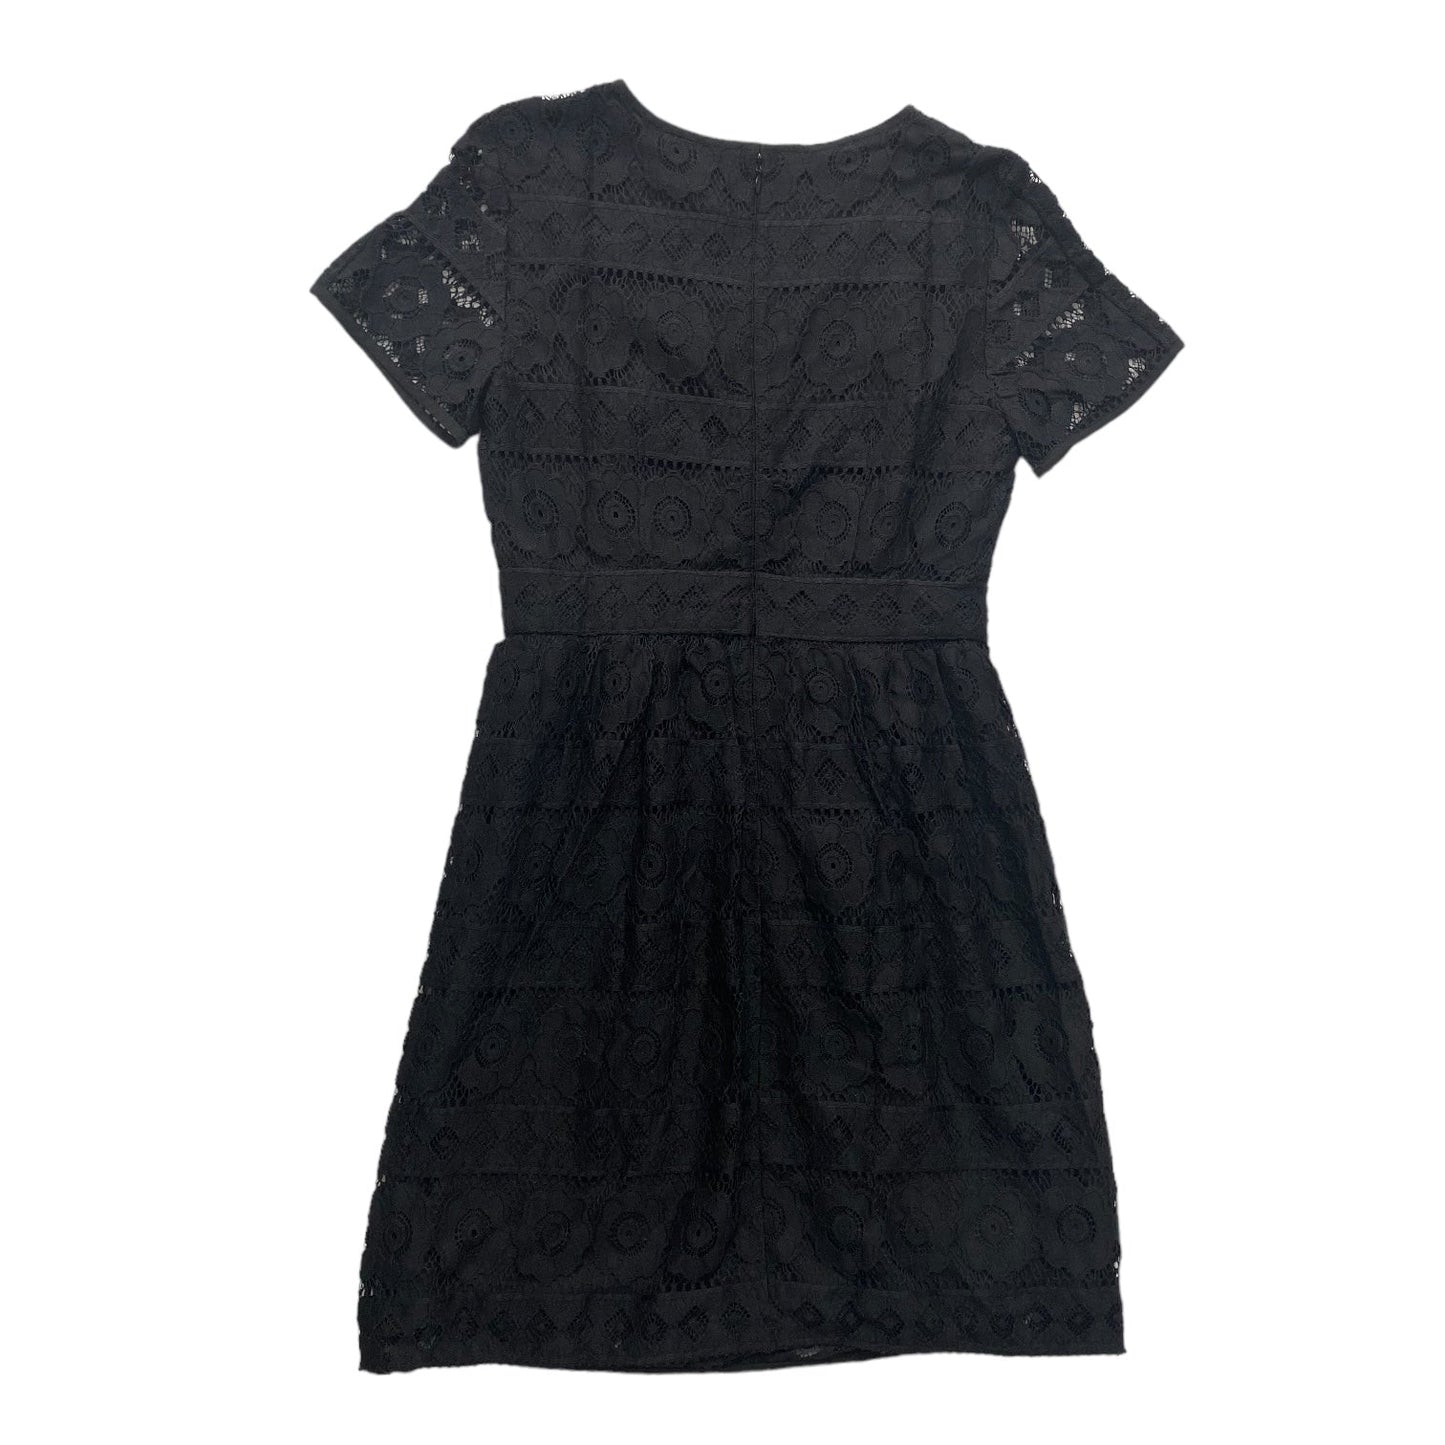 Black Dress Casual Midi Loft, Size Xs